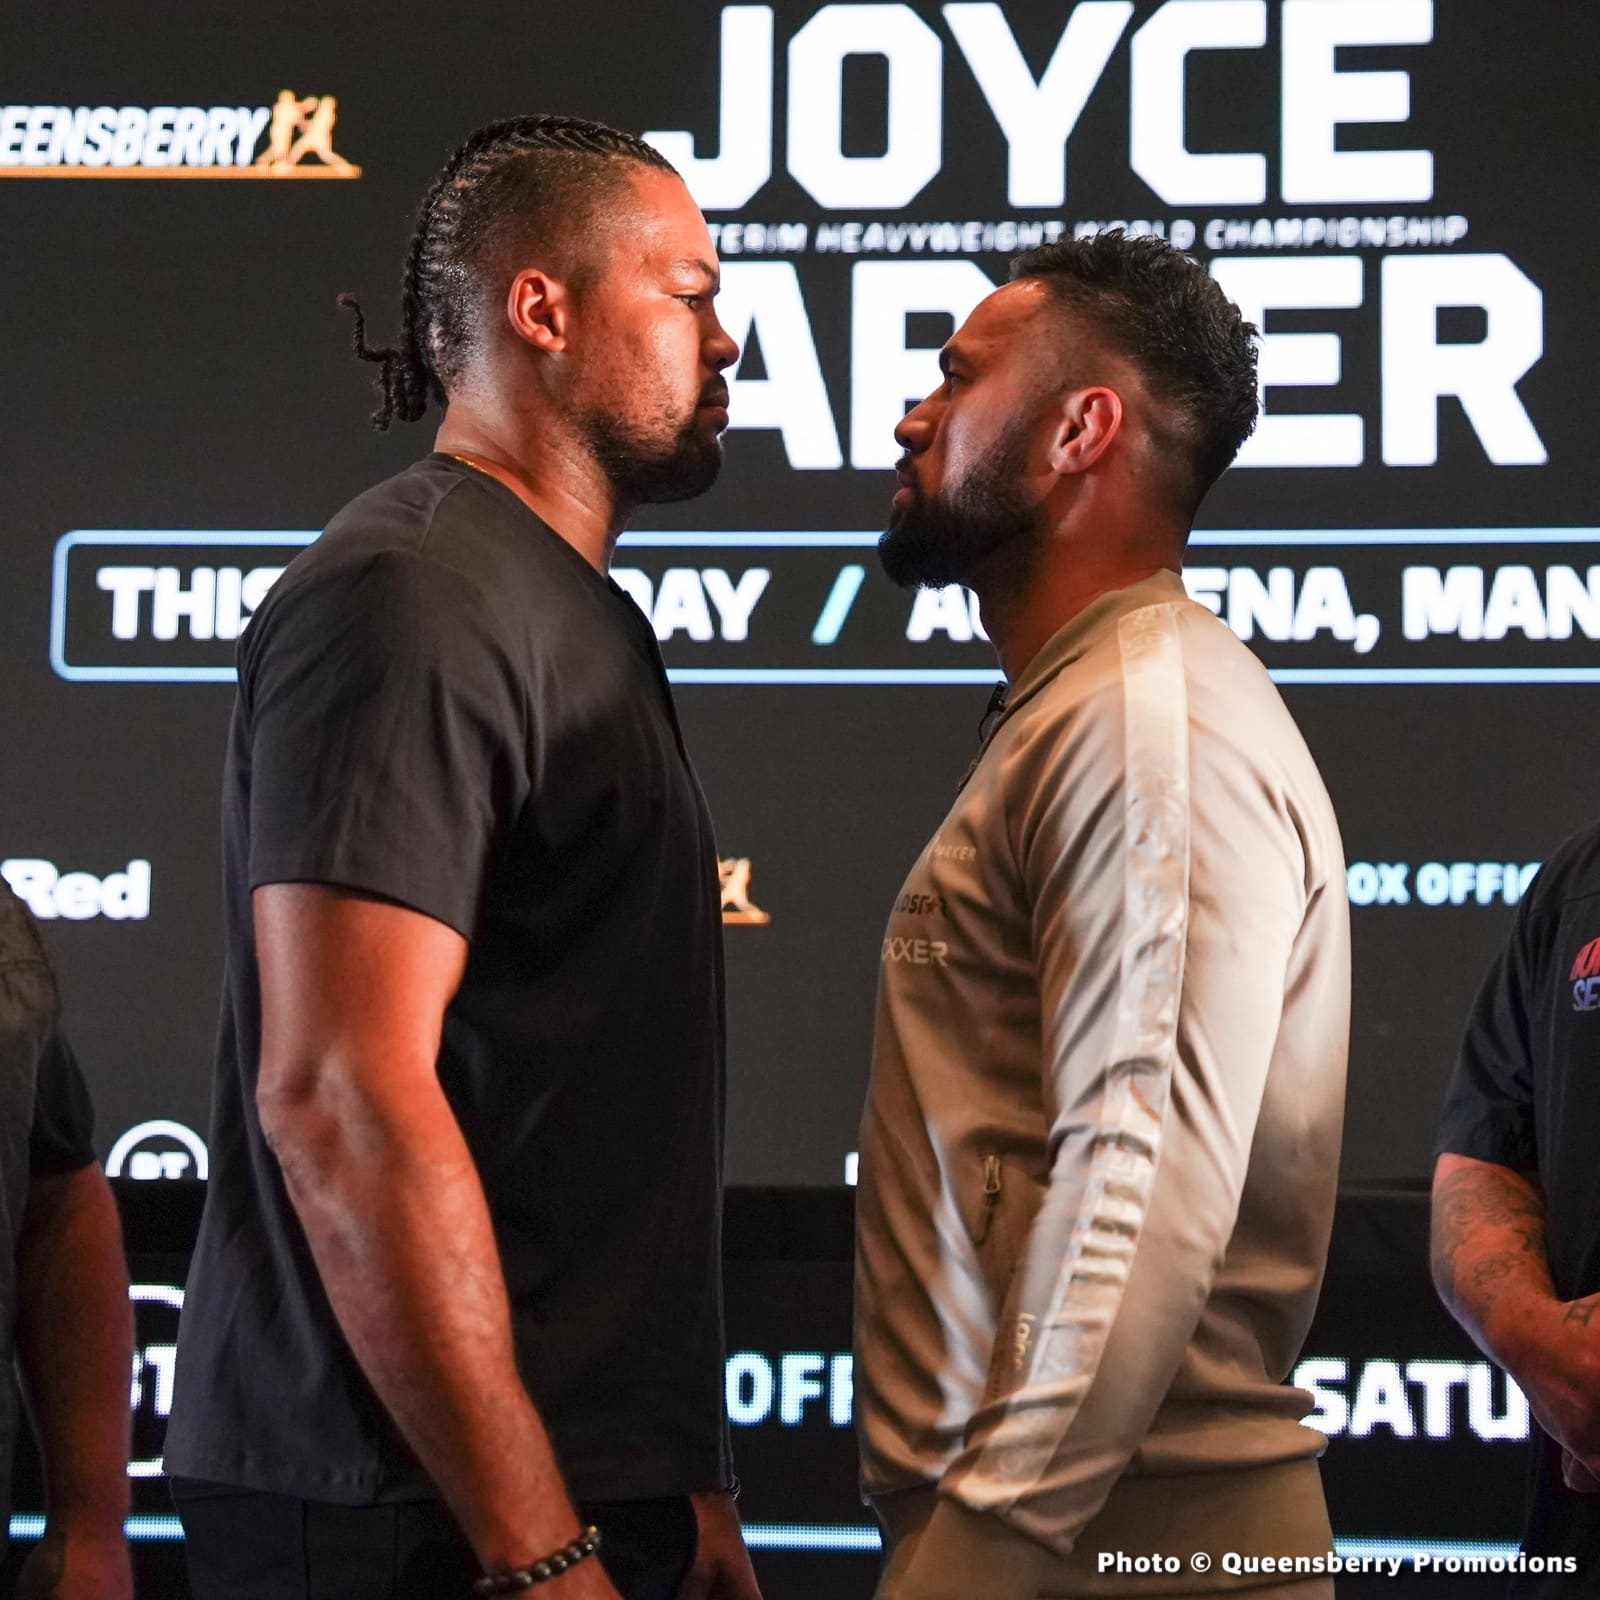 Image: Joyce v Parker, Serrano vs Mahfoud Official BT Sport / ESPN Weights